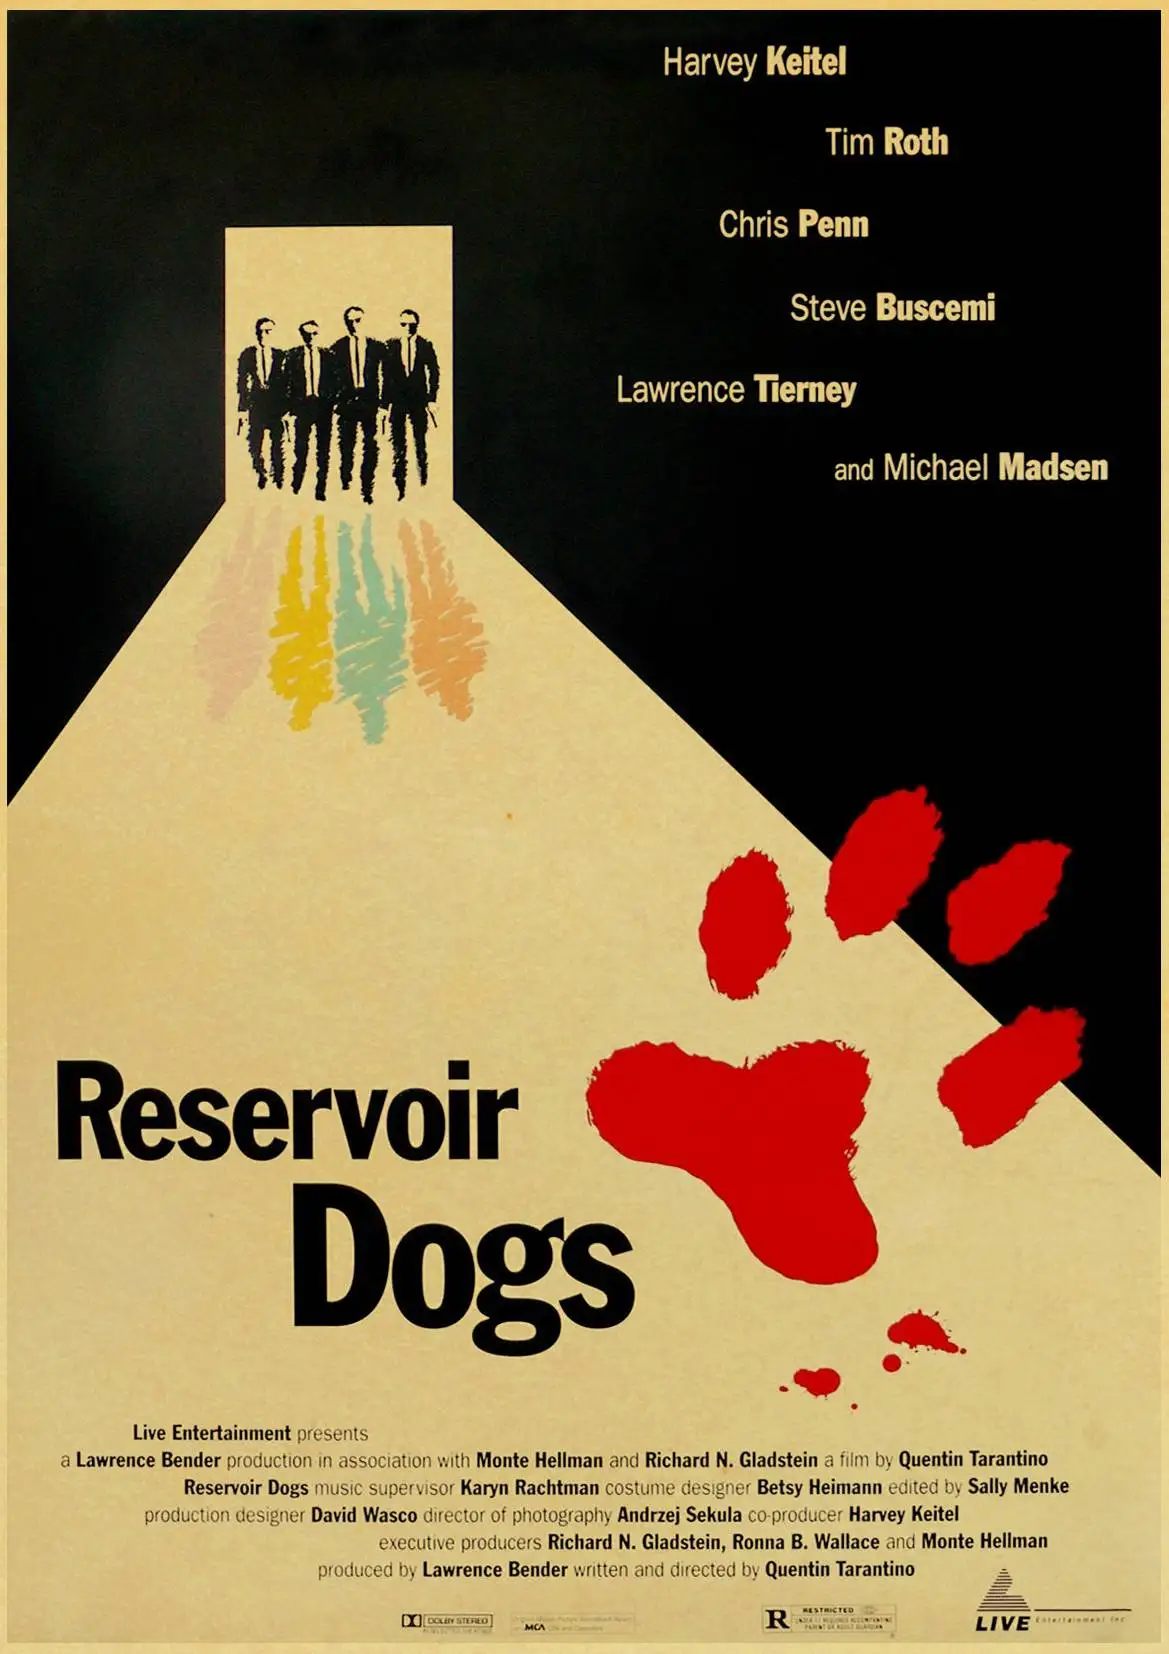 Quentin Tarantino серия постер из фильма резервуар для собак крафт-бумага высокого качества принт домашний декор настенная живопись Ретро плакат - Цвет: E046